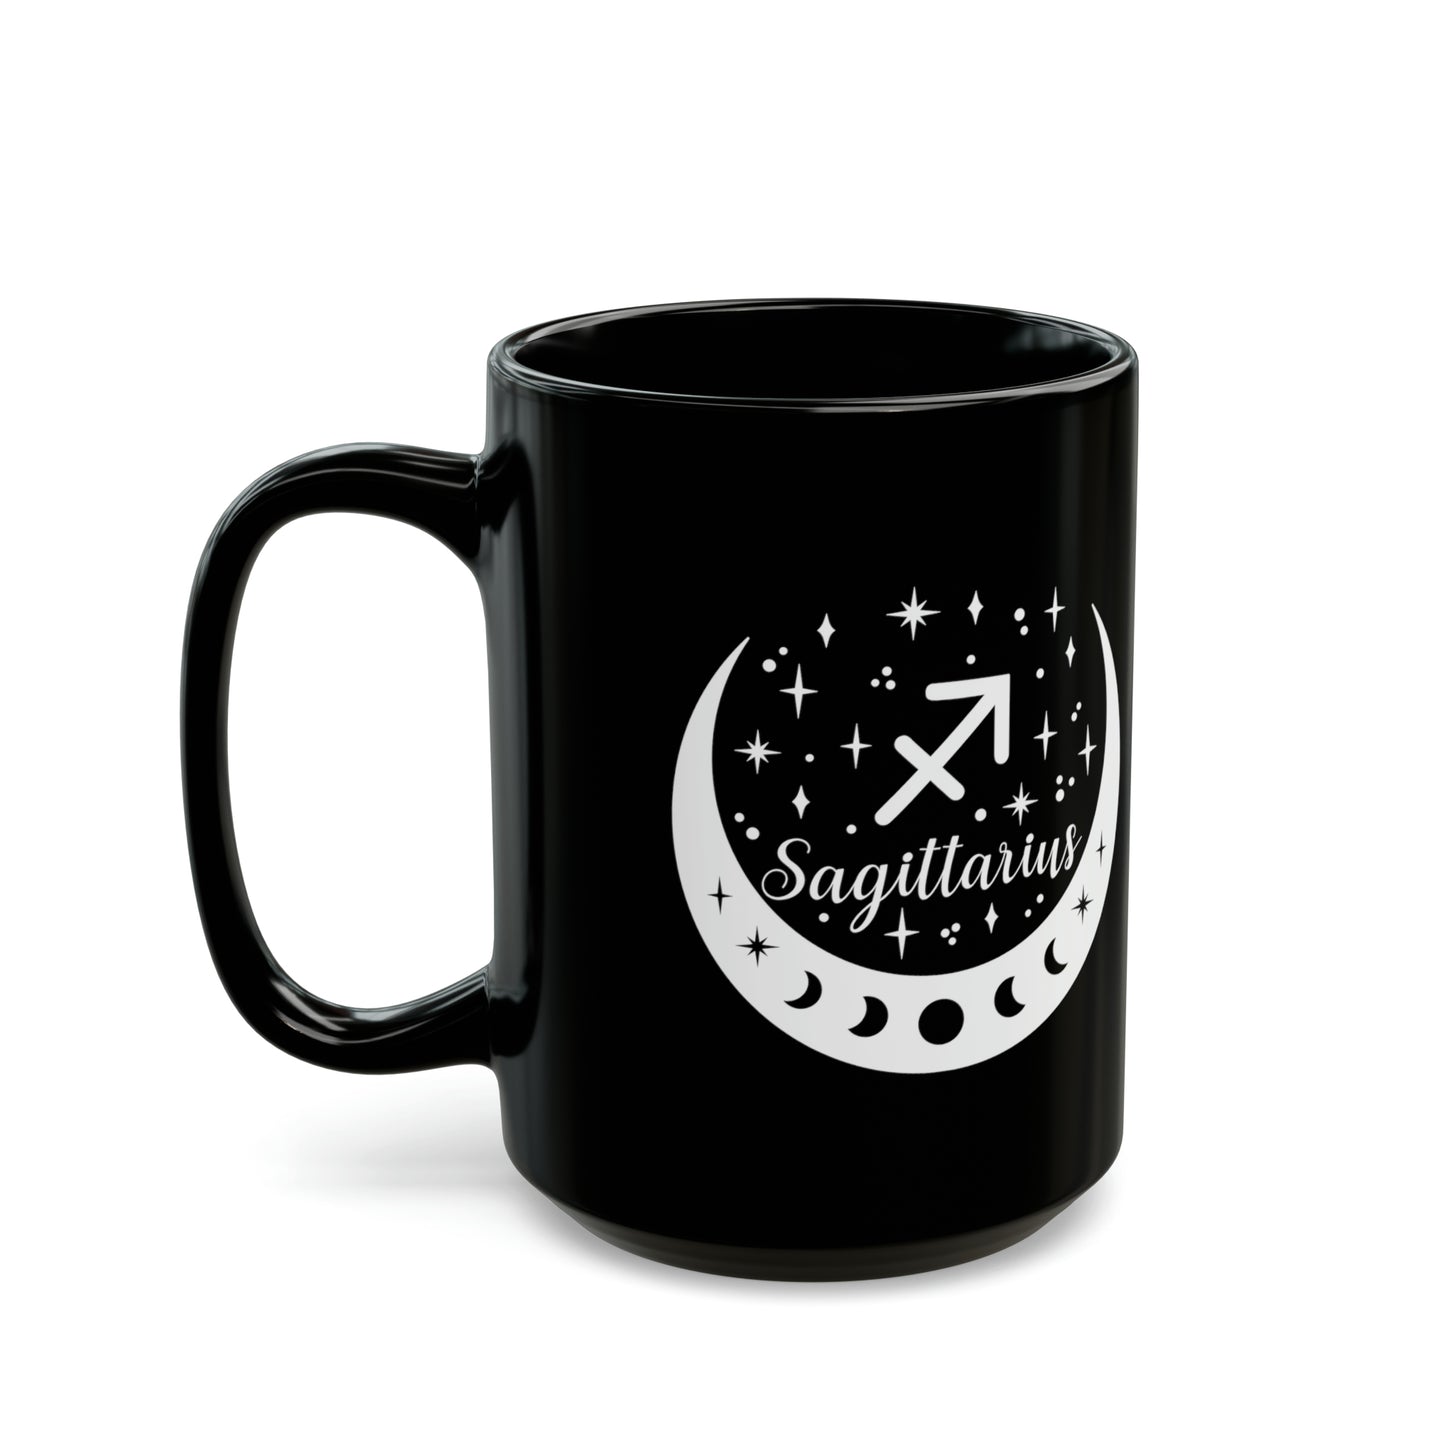 Sagittarius moon mug